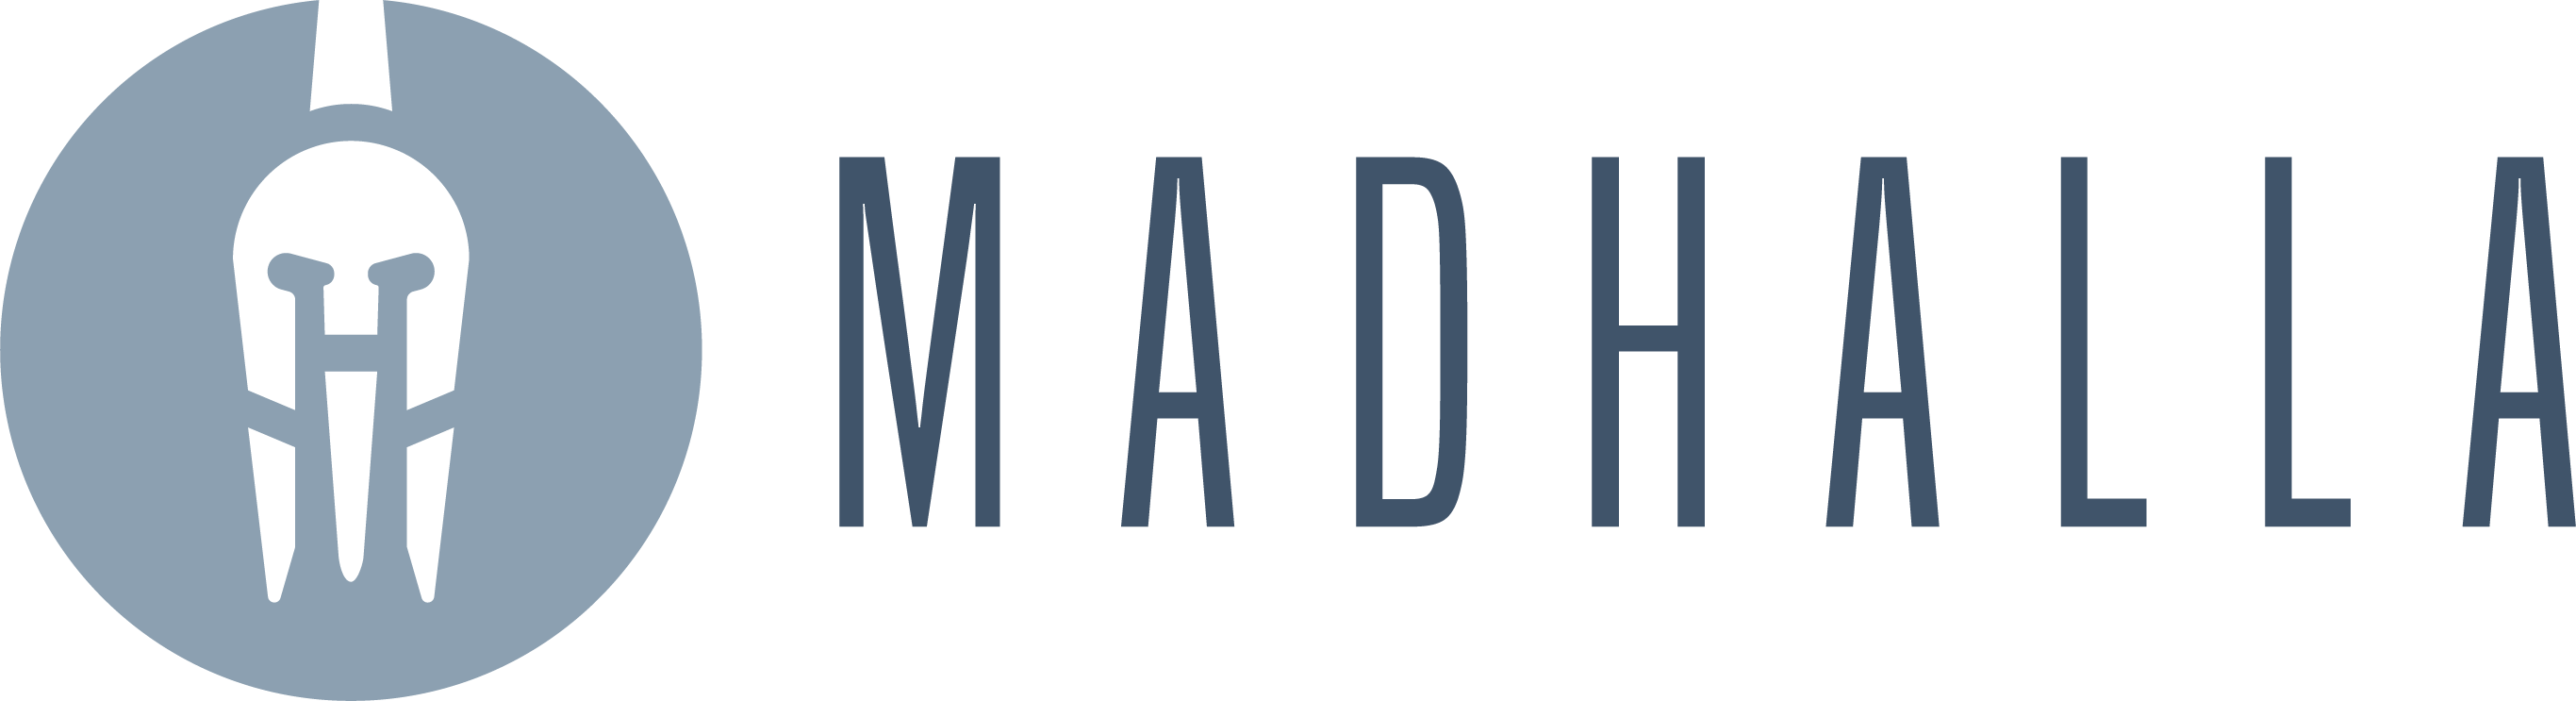 Madhalla